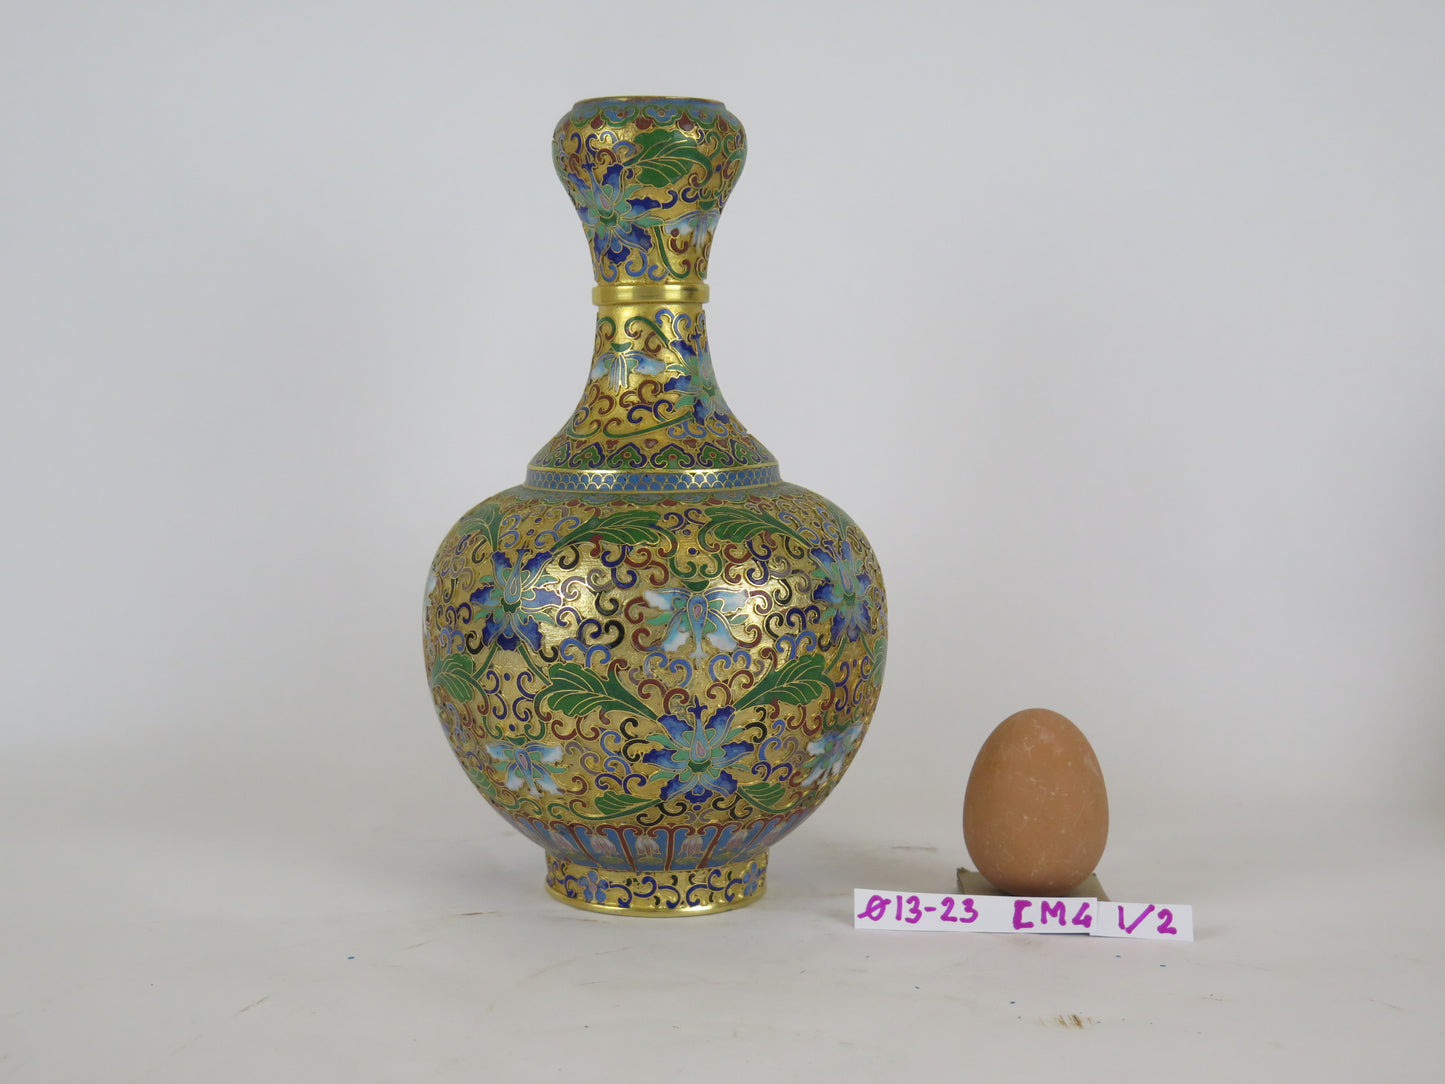 Chinese cloisonné vase cloisonné vintage cloisonné china asia multicolor CM4 1-2